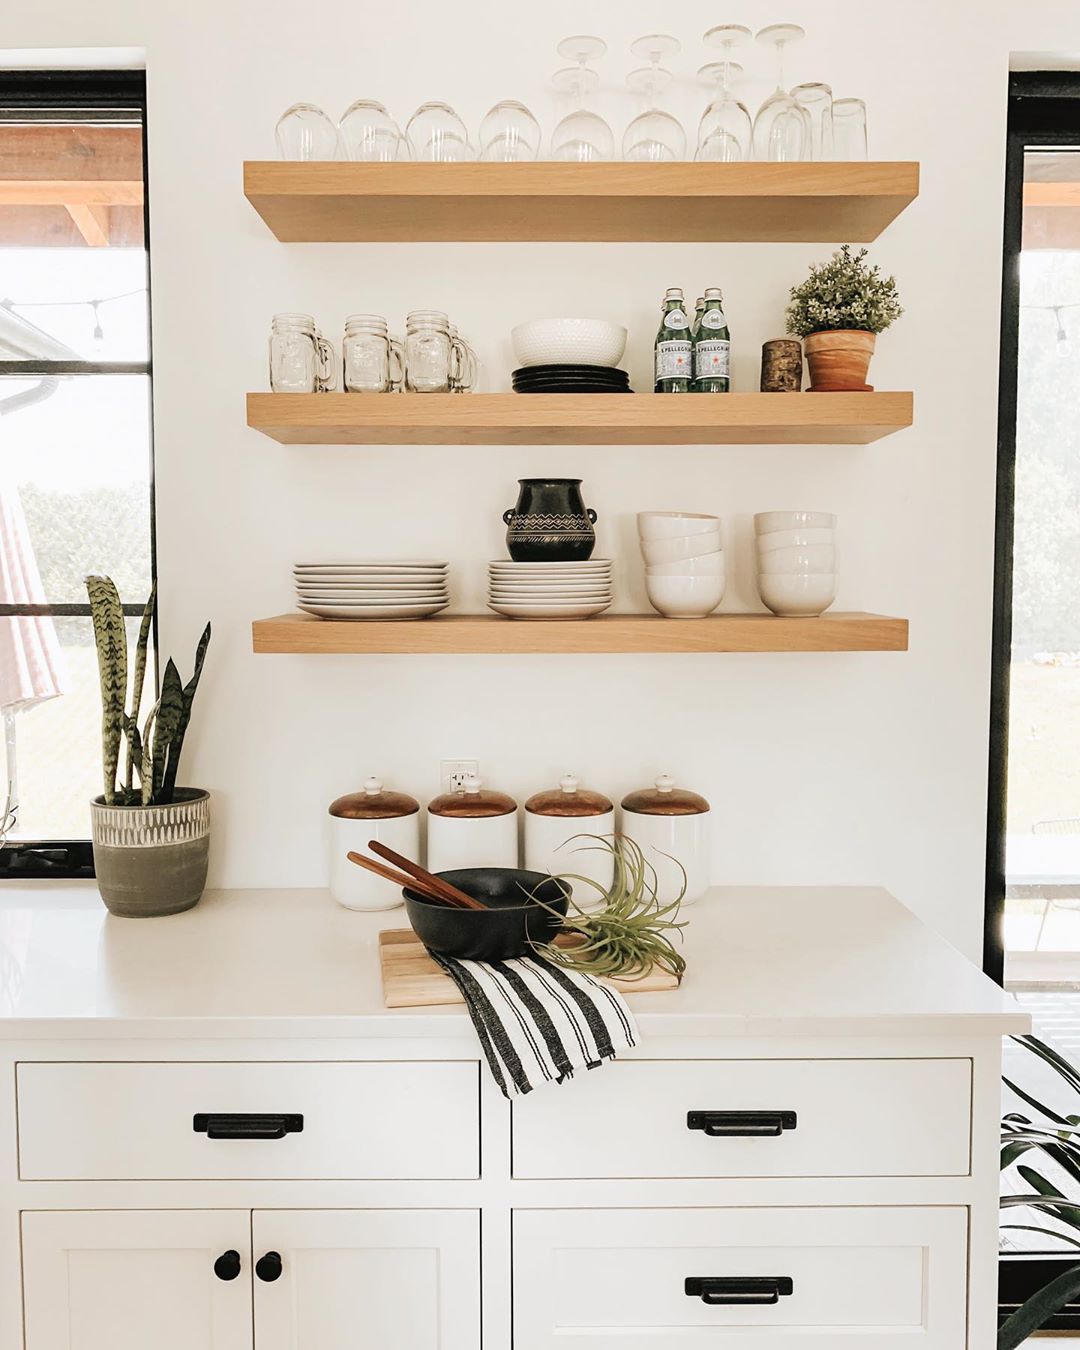 Floating shelves in modern kitchen. Photo by Instagram user @kassandrakedoning